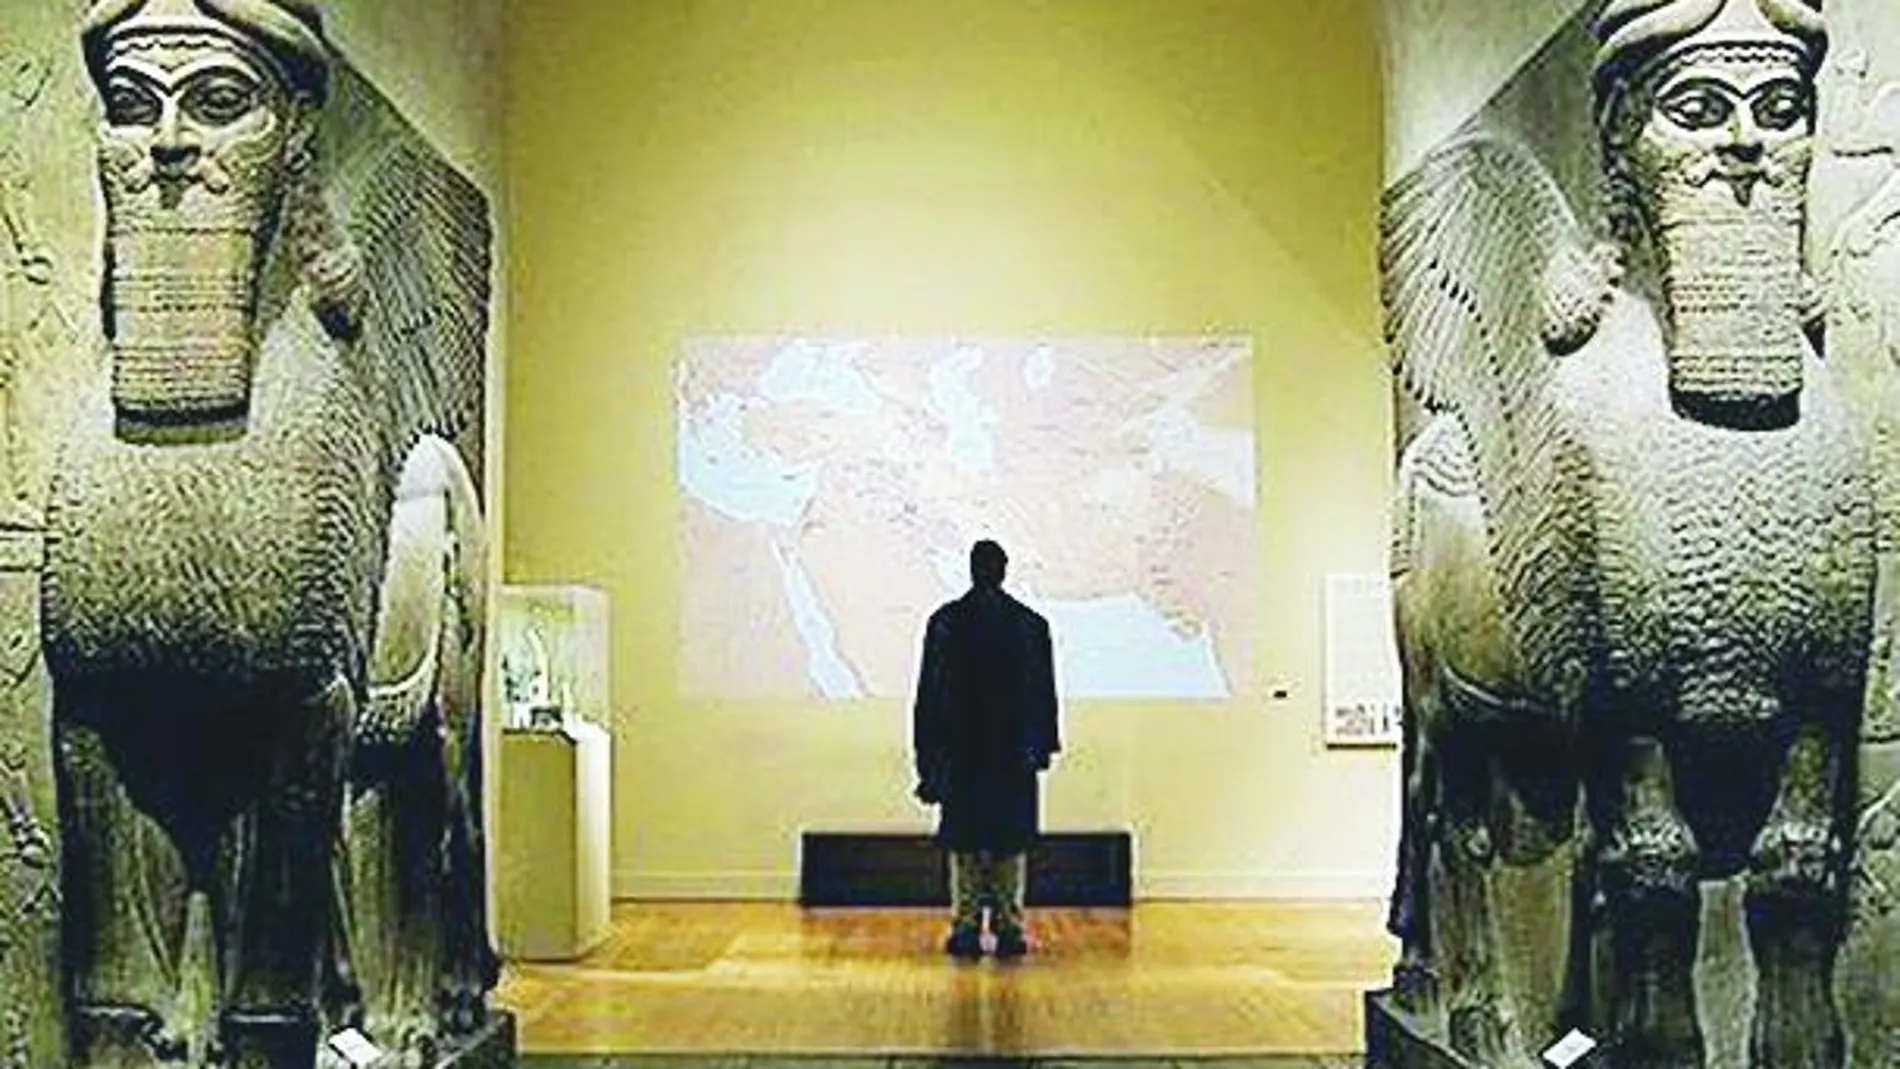 Hay colosales toros alados originales del norte de Irak en museos como el British o el Metropolitano de Nueva York, guardados a buen recaudo